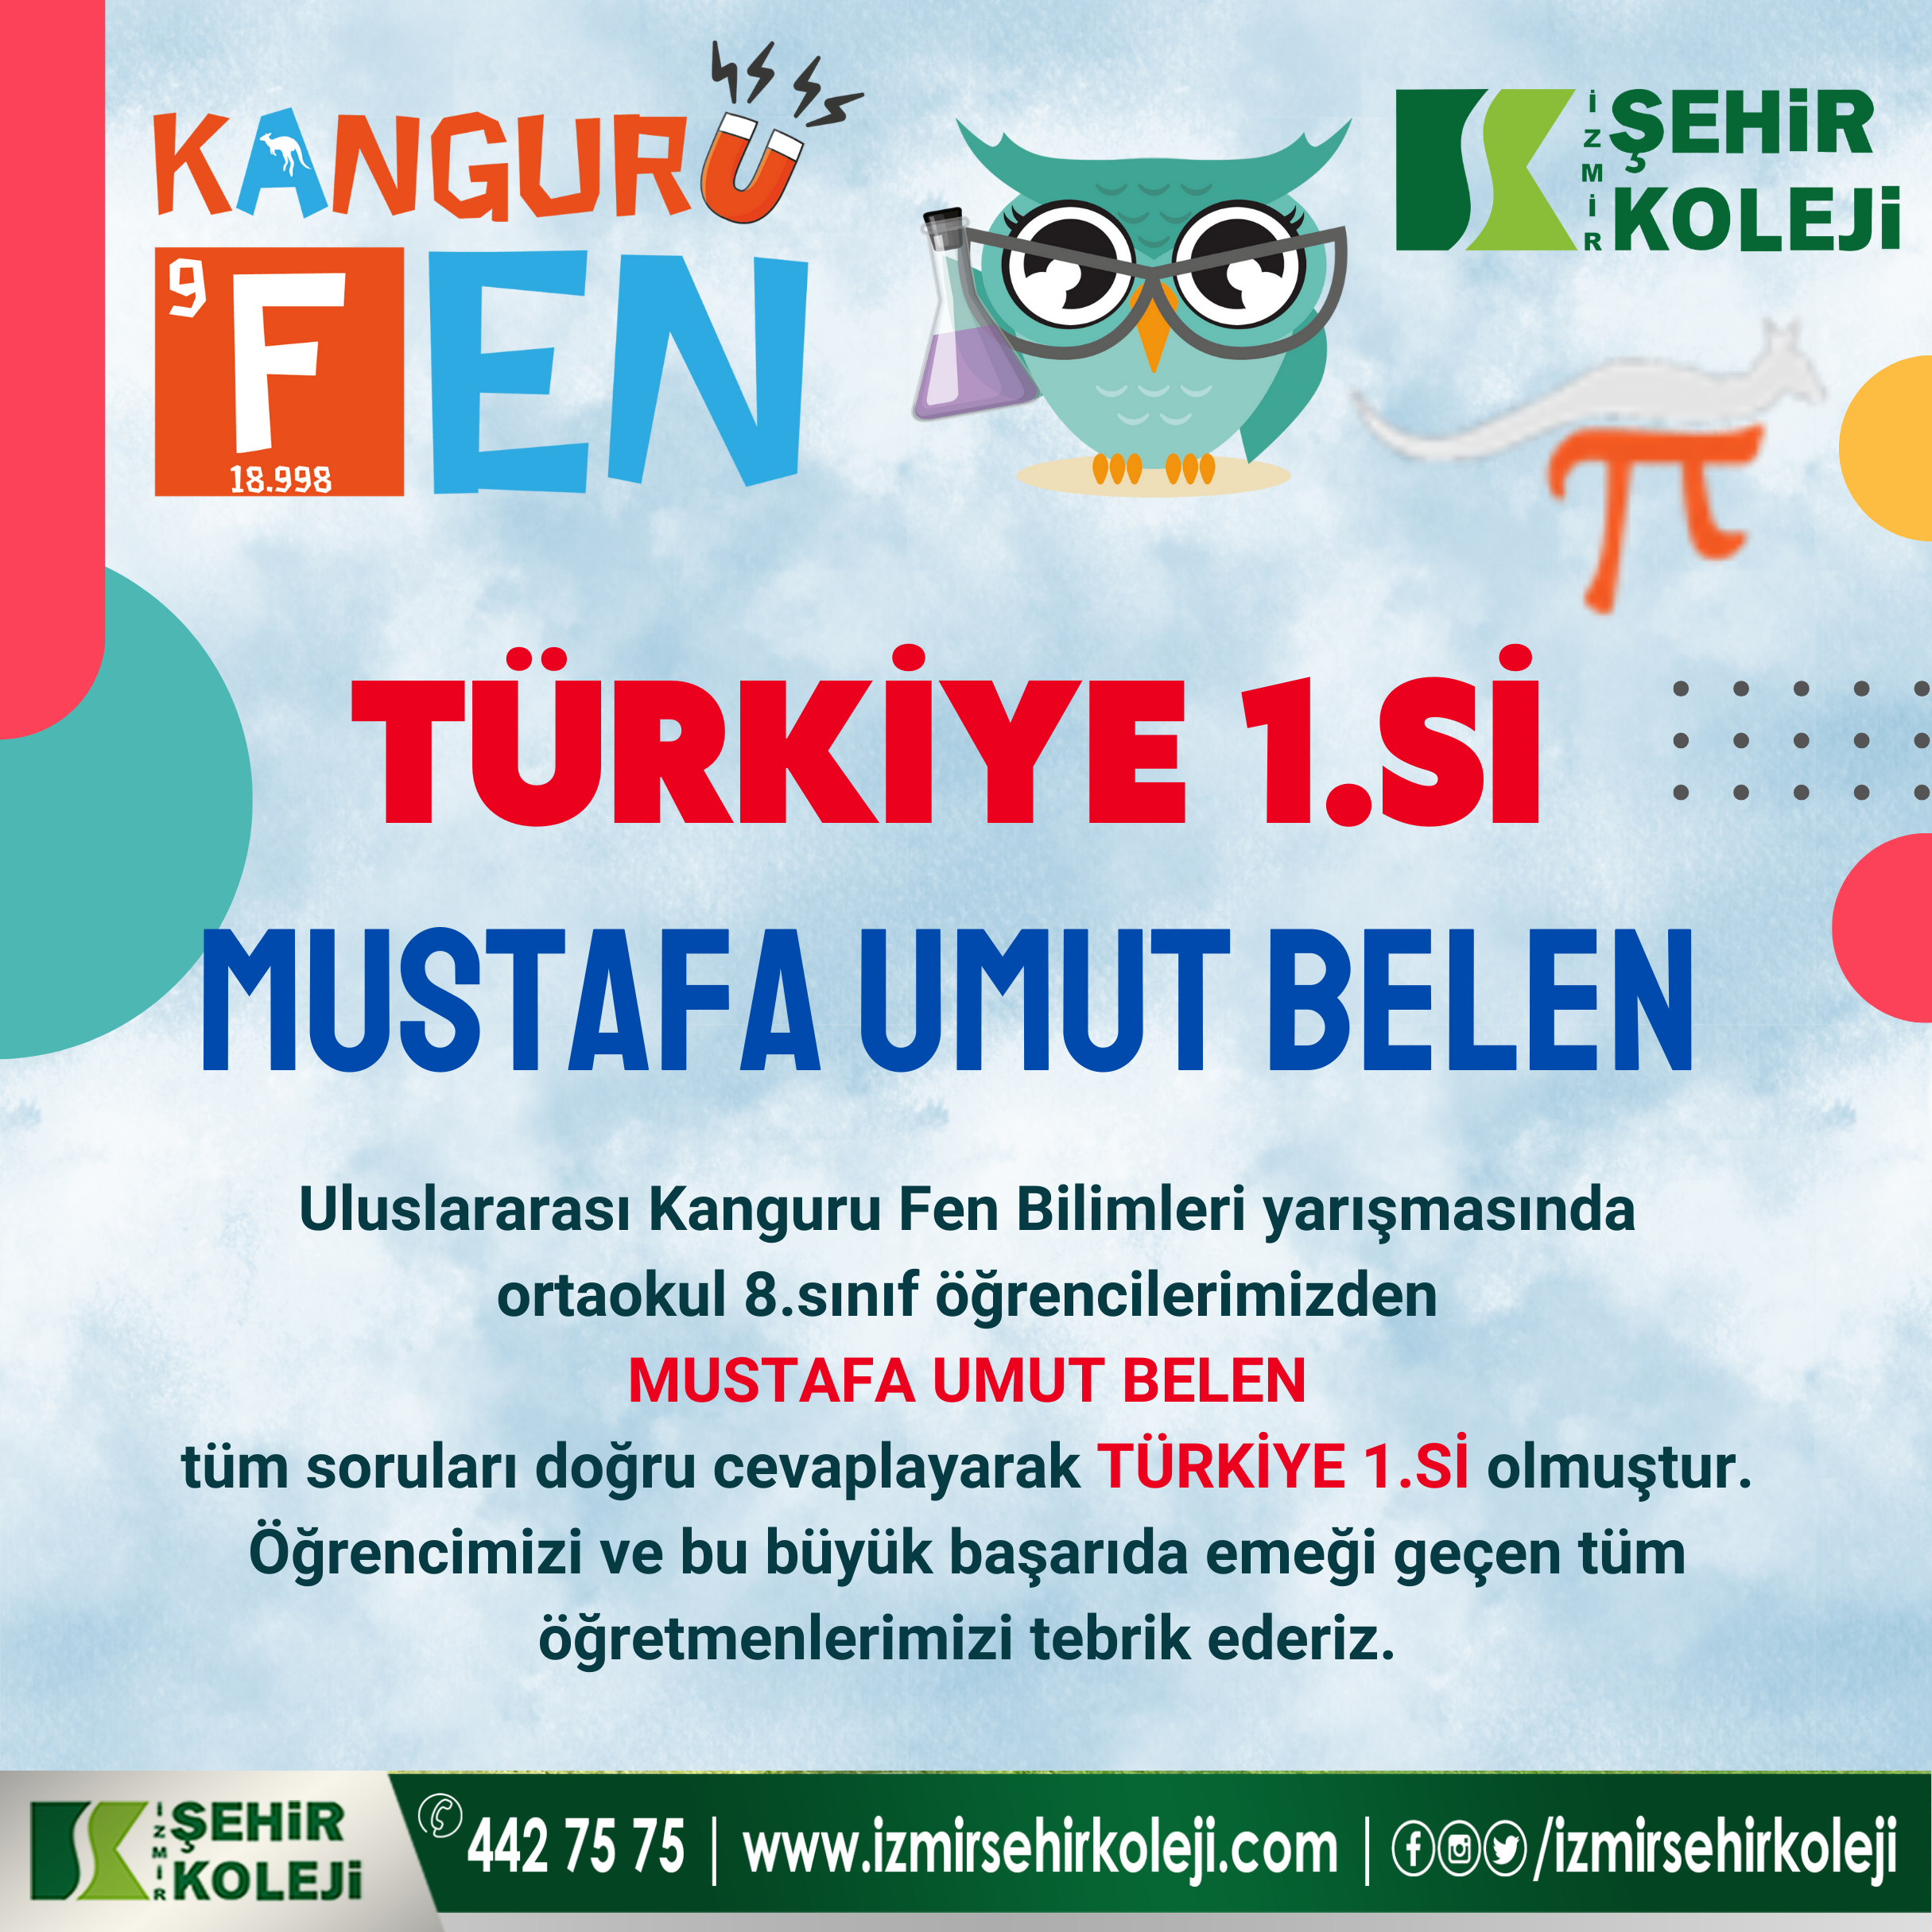 Uluslararası Kanguru Fen Bilimleri yarışması Türkiye 1.si